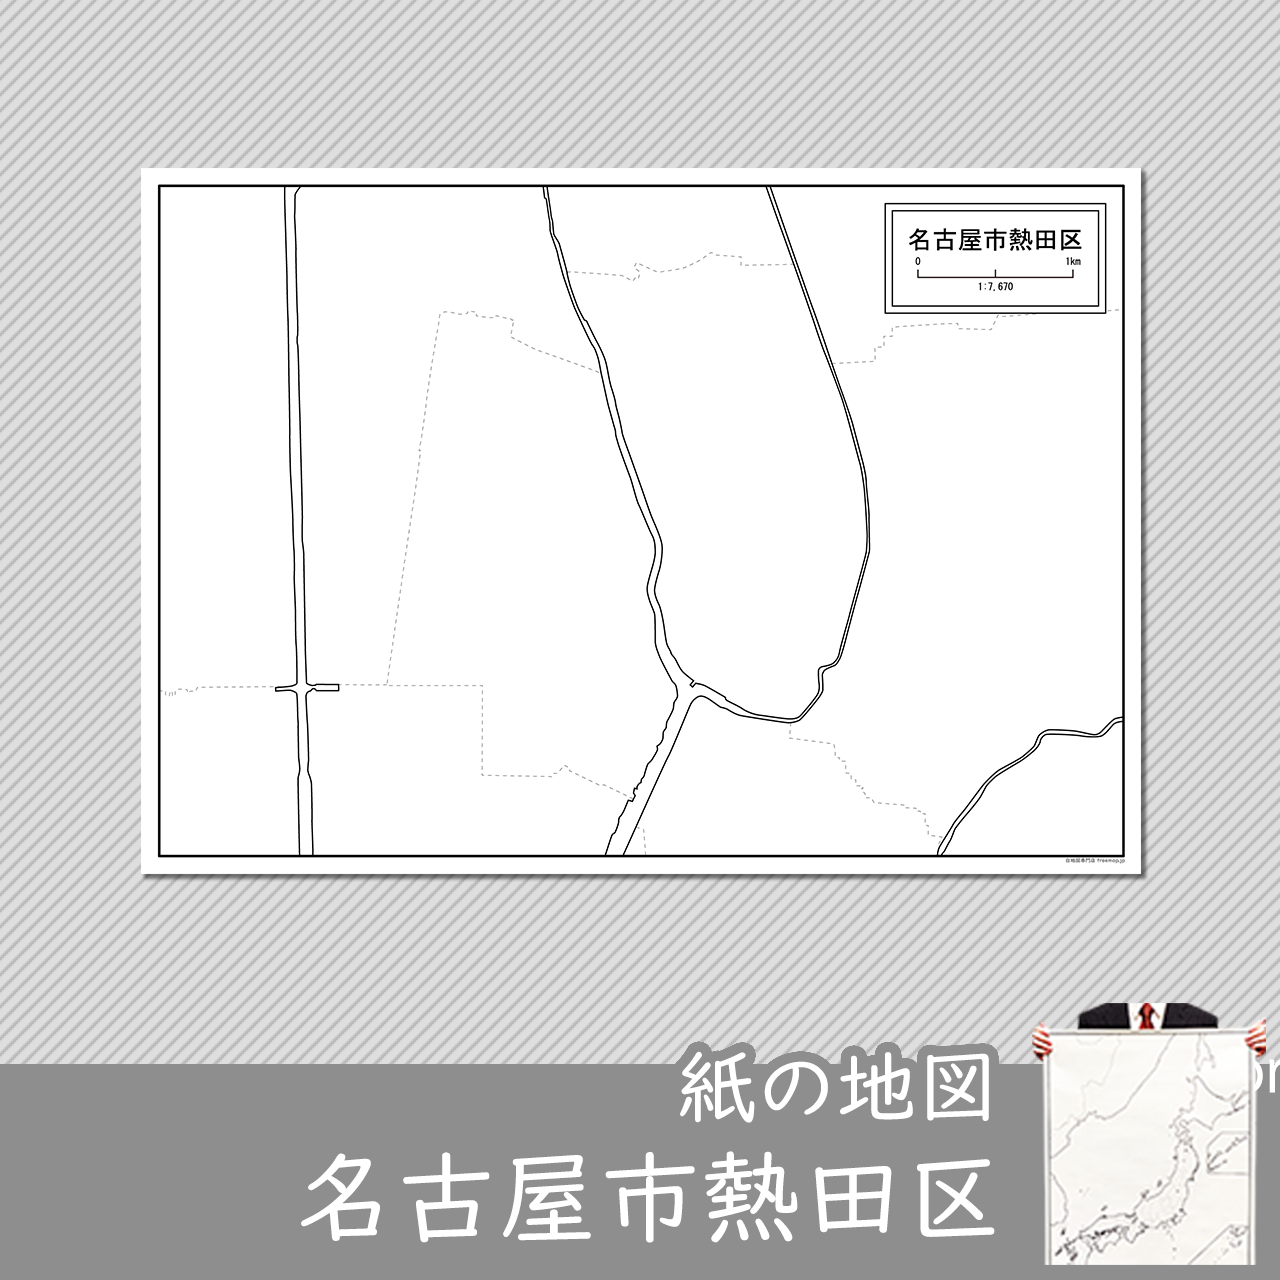 名古屋市熱田区の紙の白地図のサムネイル